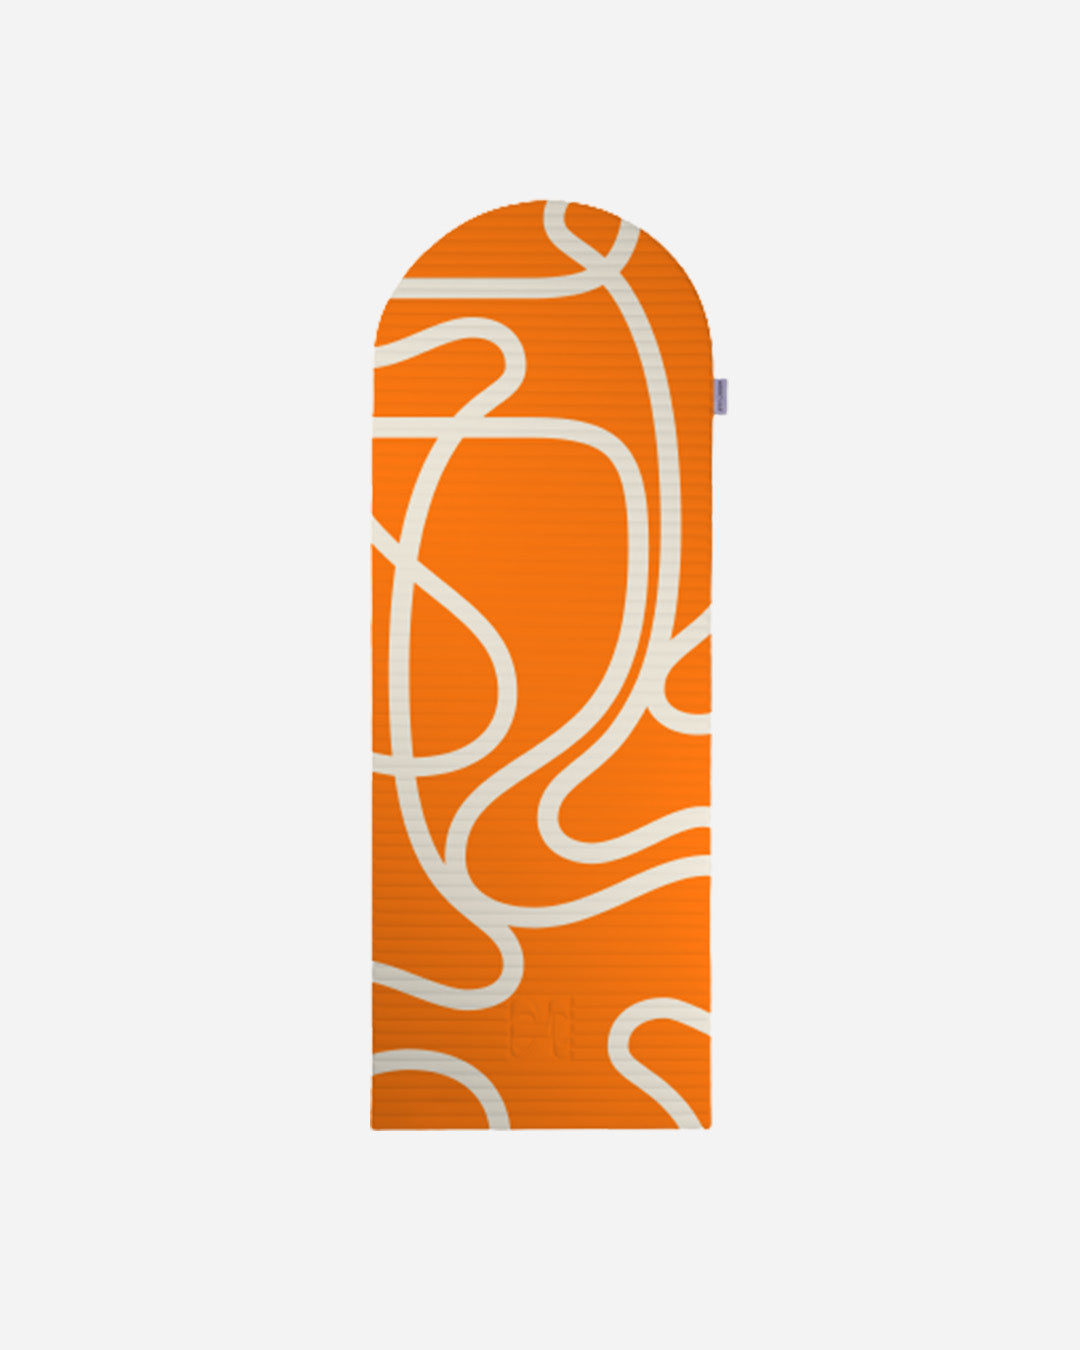 Tapis de sol pour le fitness le yoga et le pilates de la marque hercule studio modèle archy couleur imprimé bari orange pop packshot déplié